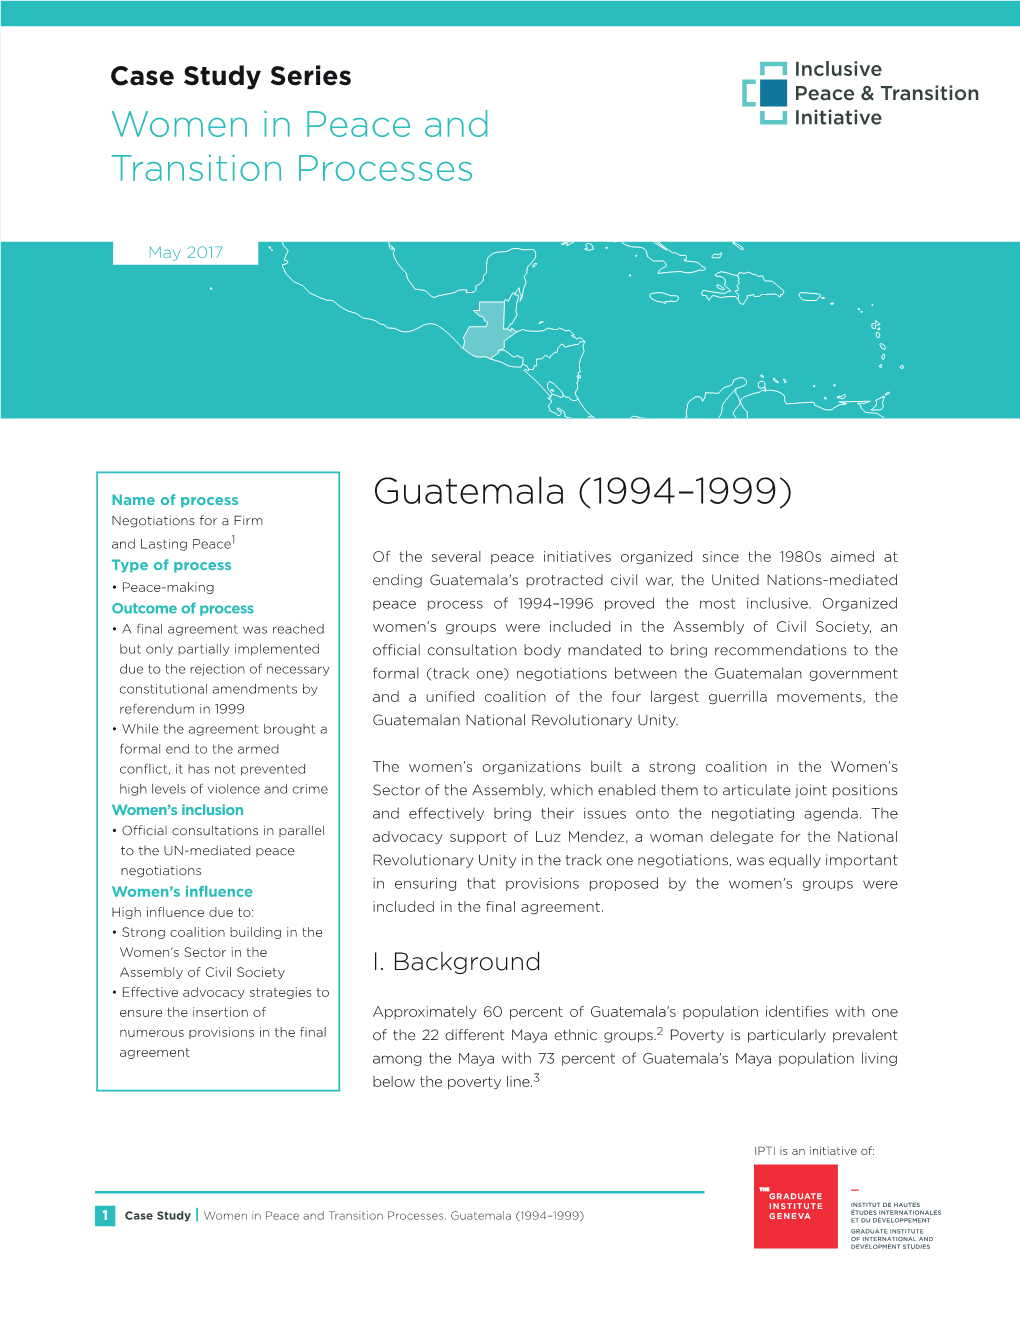 Case-Study-Women-Guatemala-1994